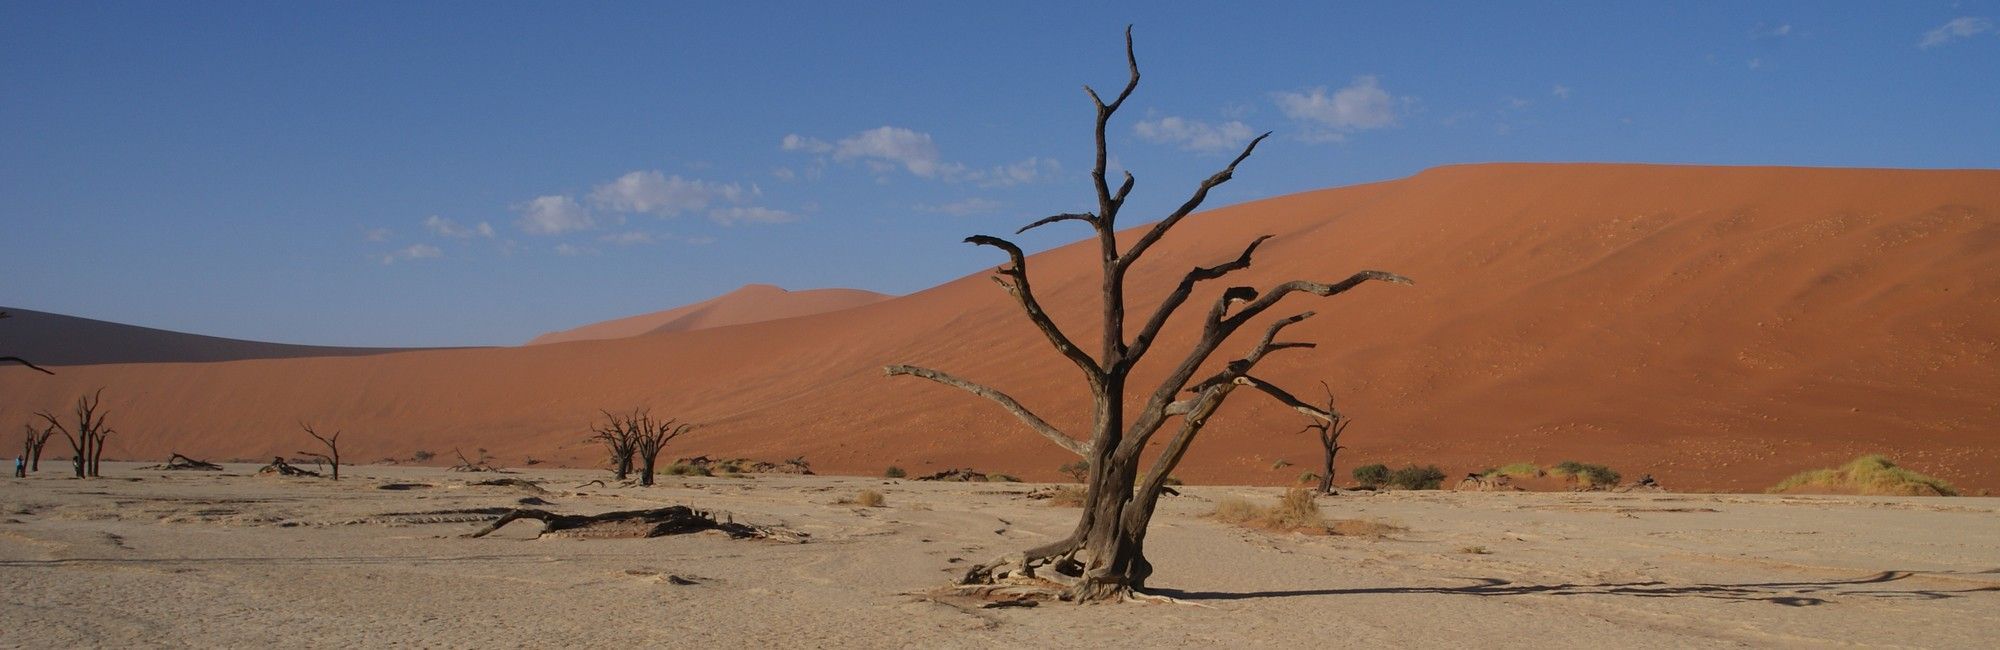 Namibie rode duinen